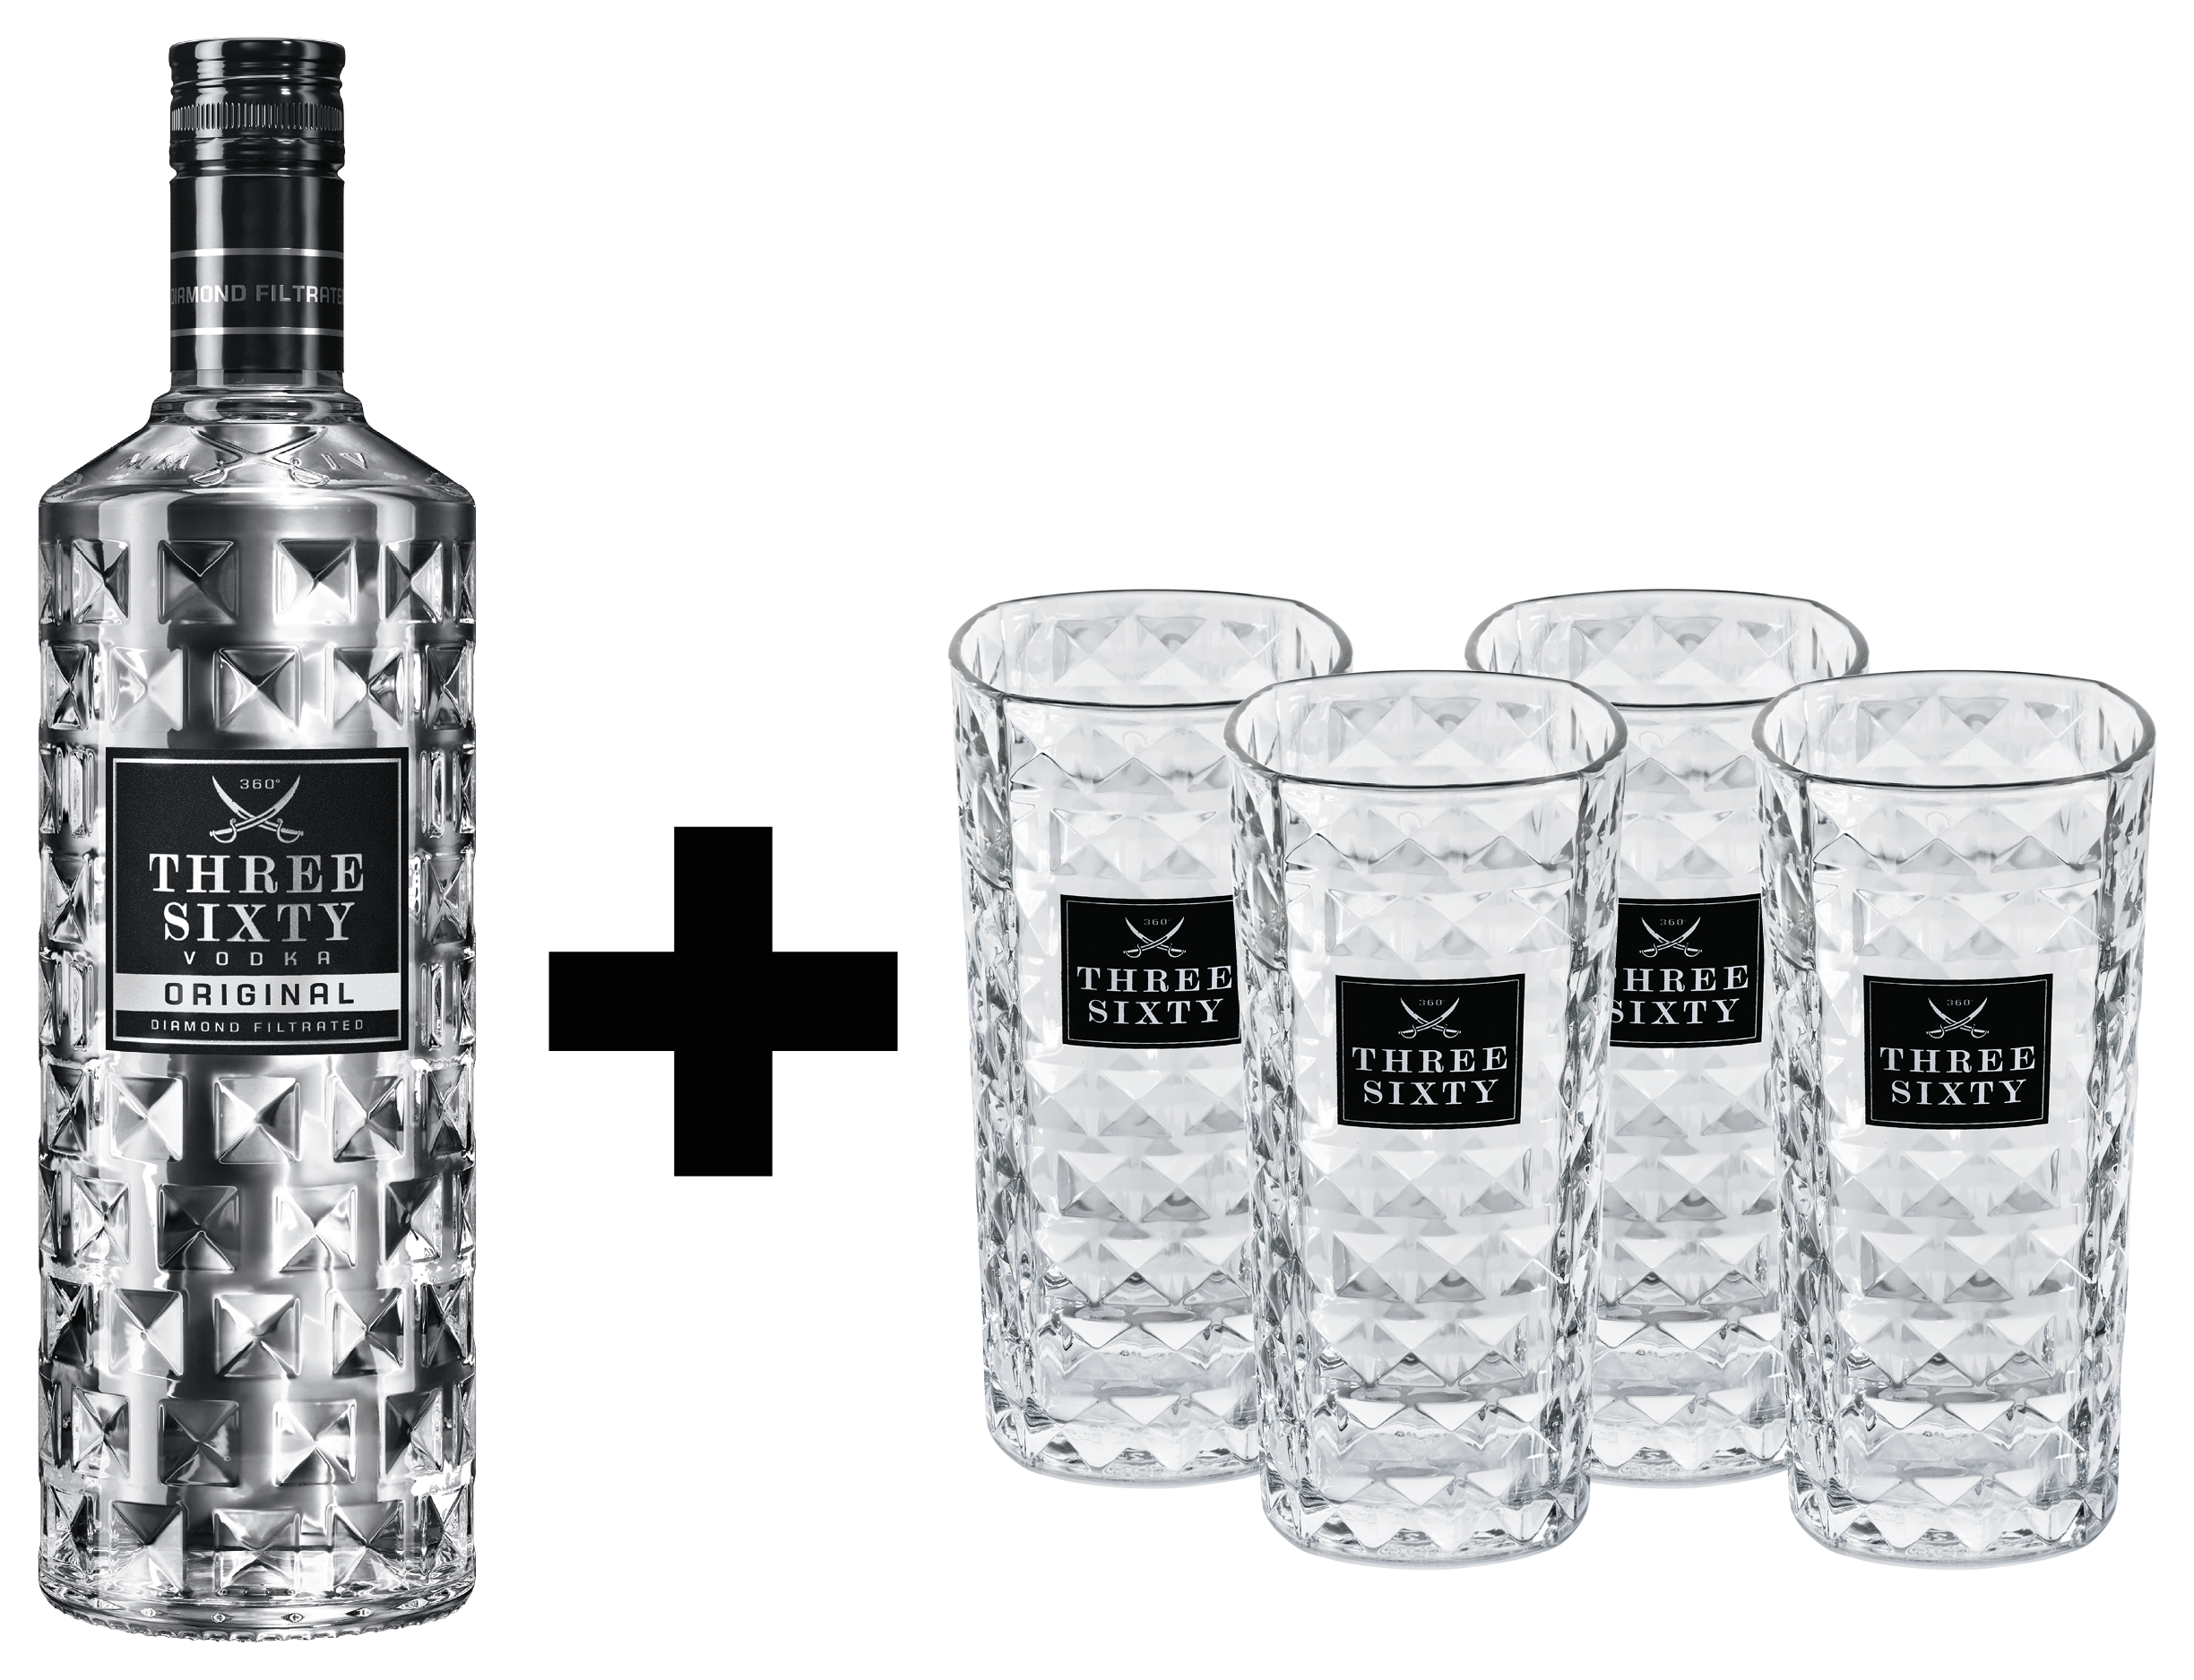 THREE SIXTY Vodka 0,7l 37,5% vol. + 4x THREE SIXTY Gläser 0,3l